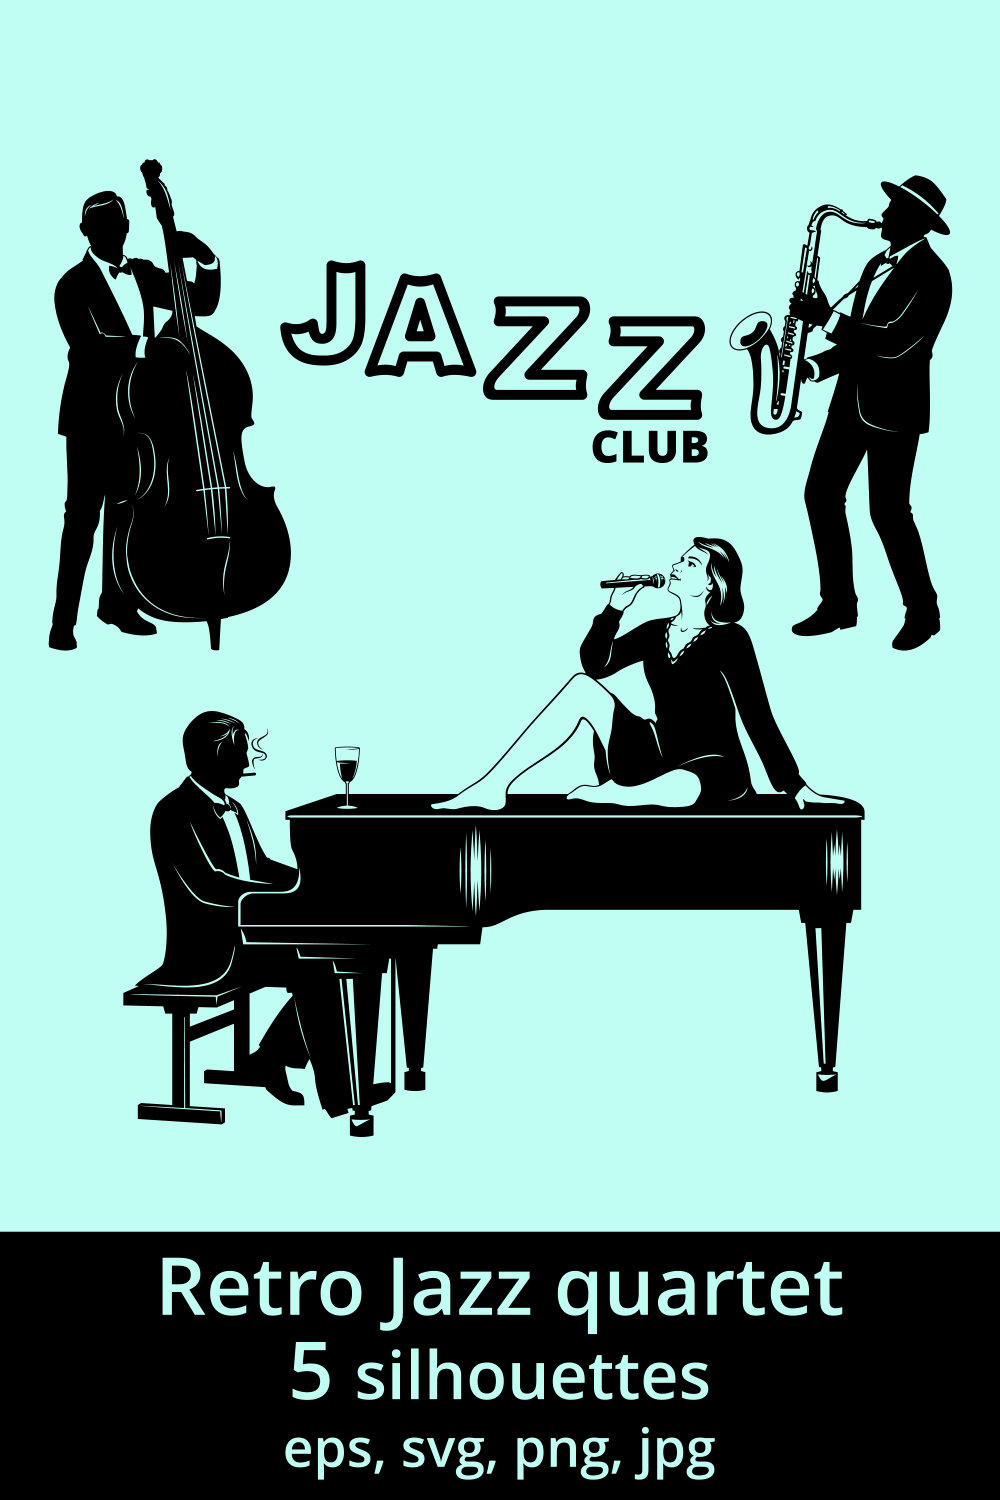 Jazz Quartet Silhouettes pinterest preview image.